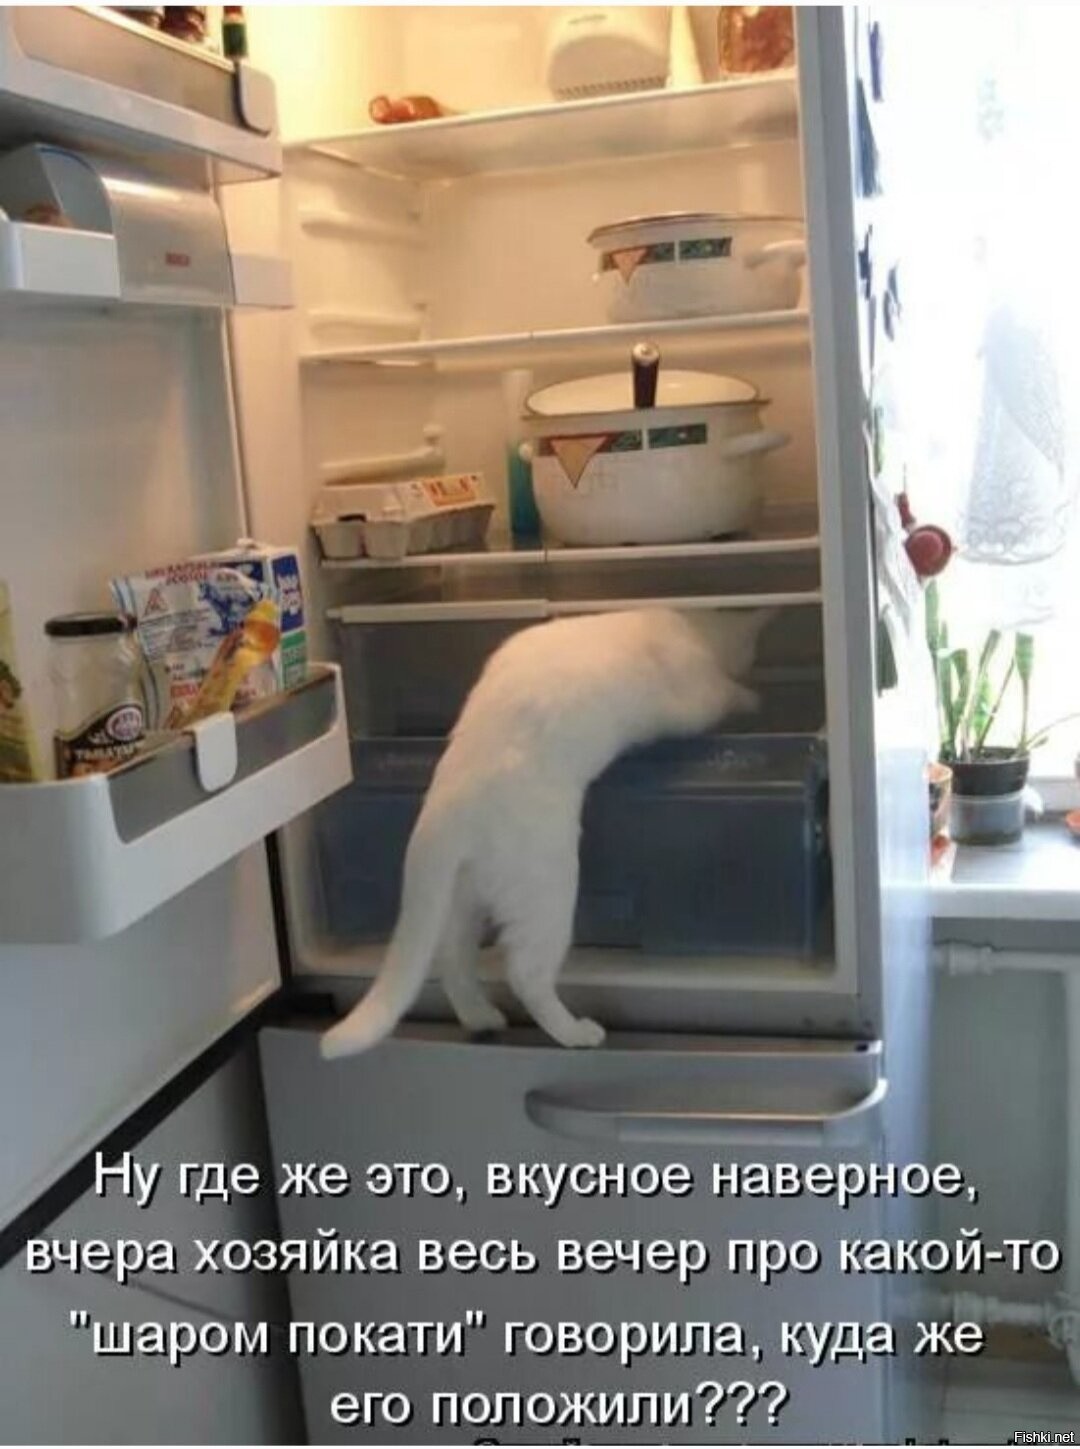 Котик в холодильник заглядывает